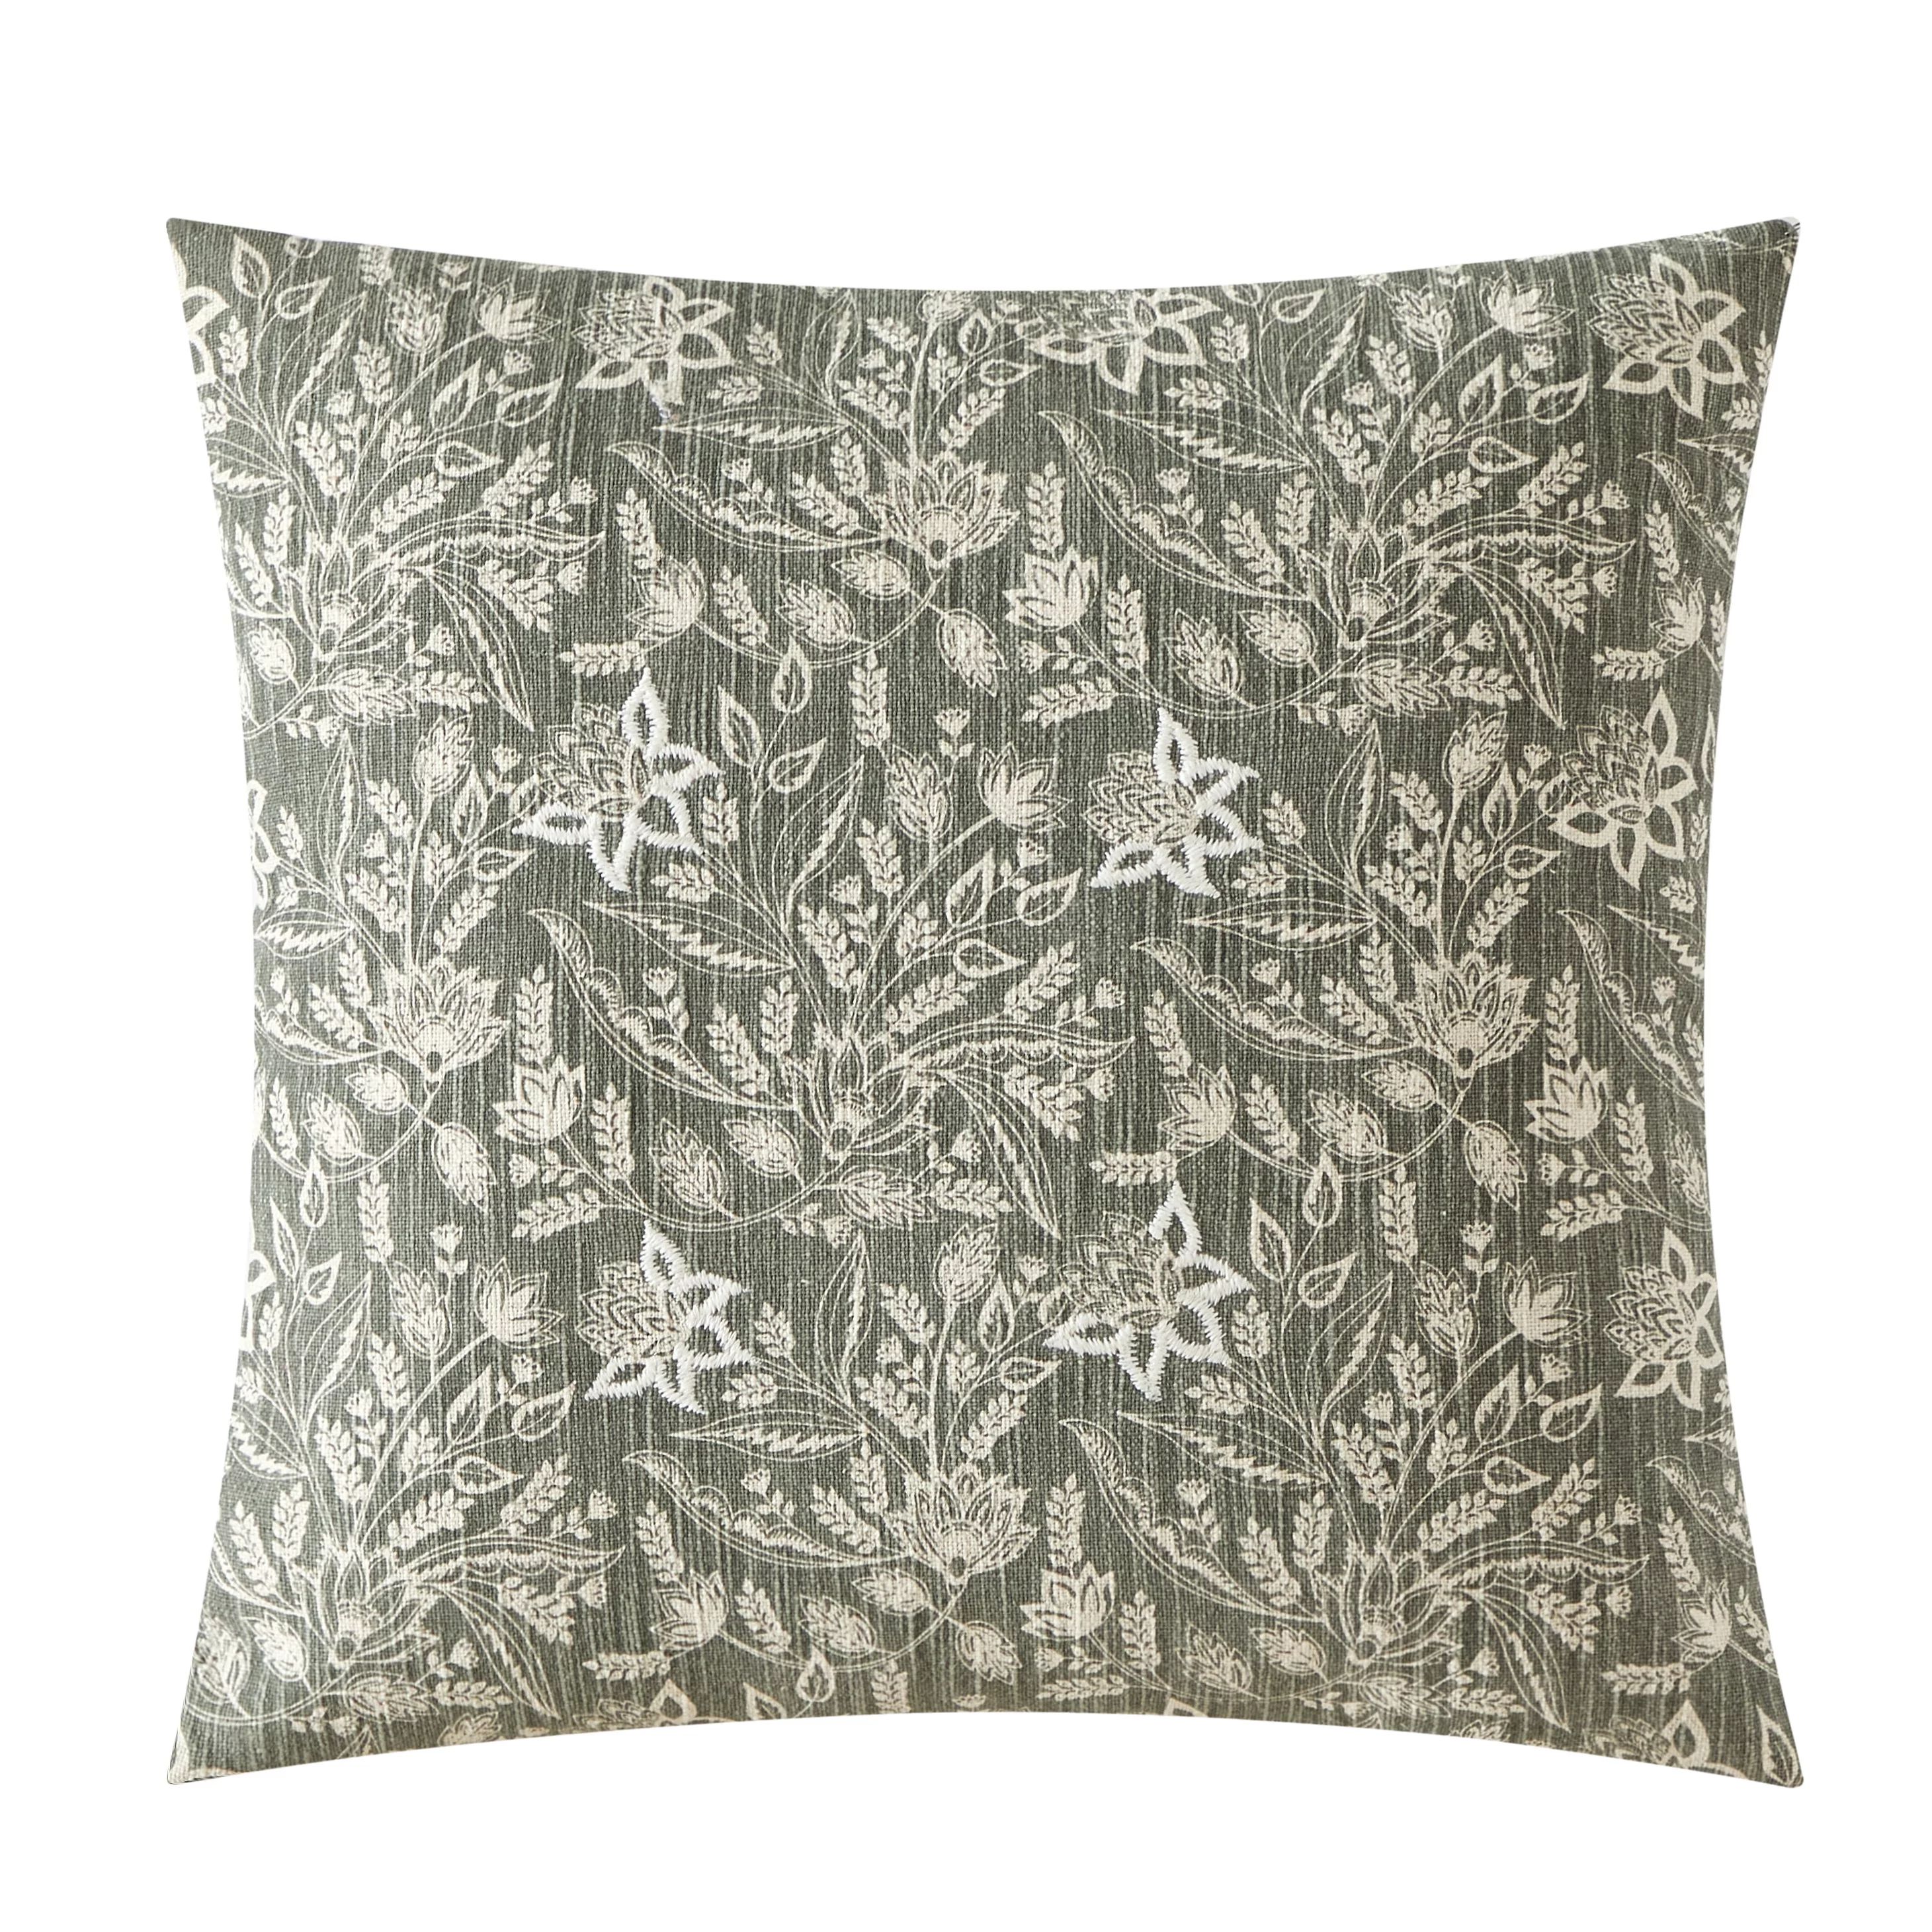 Style House 100% Cotton Botanical Floral Decorative Pillow 20" x 20" | Walmart (US)